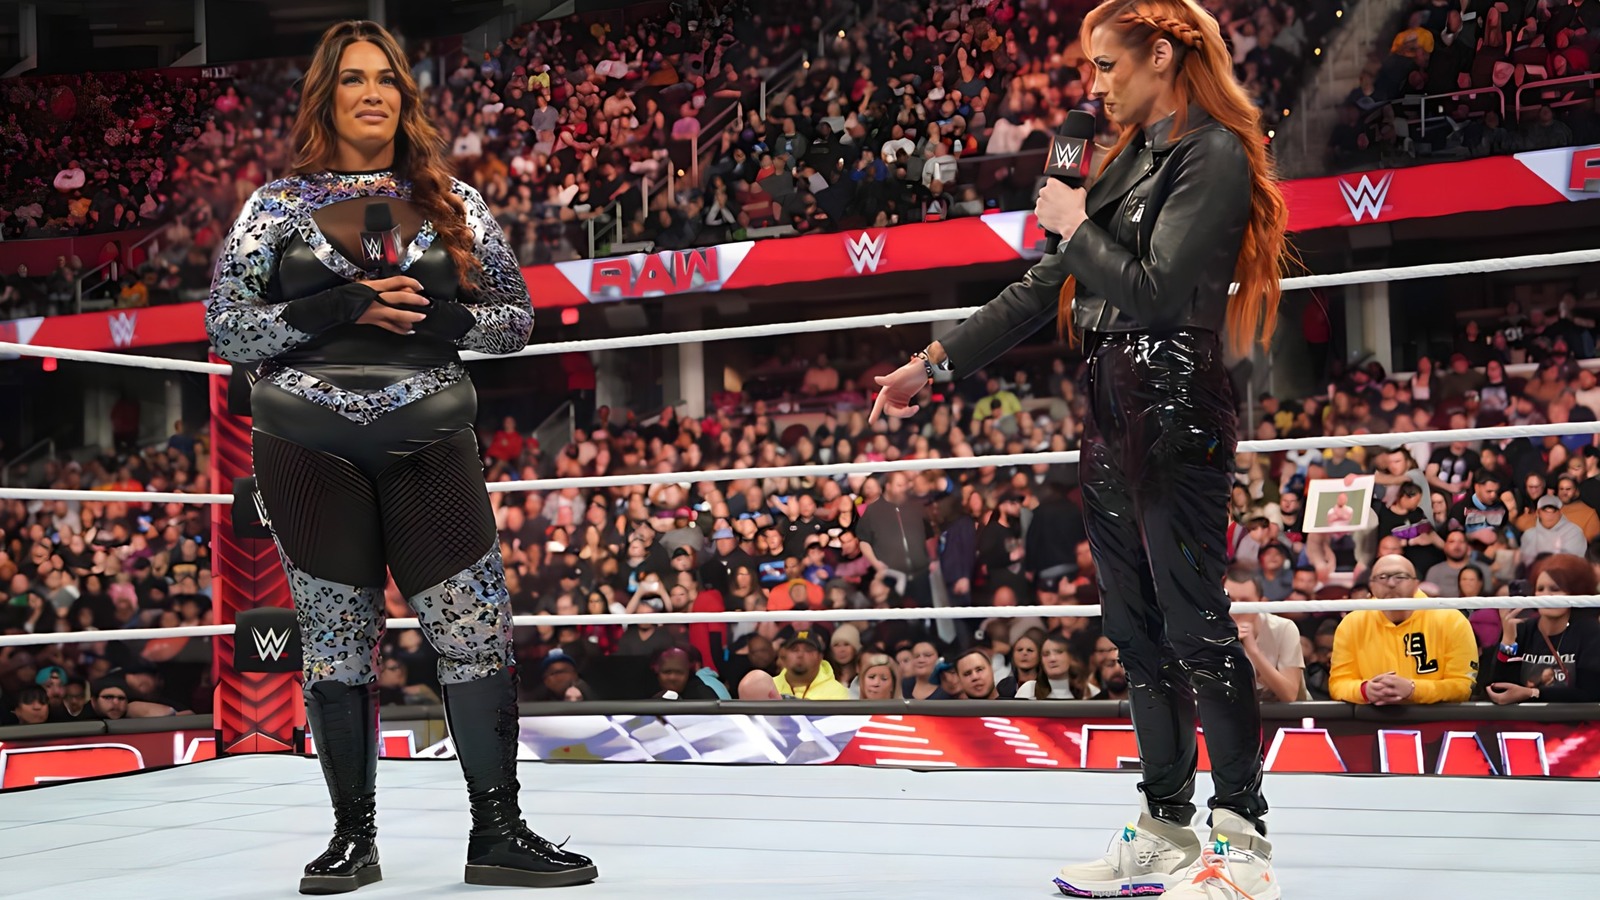 Bully Ray evalúa la promoción de Nia Jax y Becky Lynch de WWE Raw